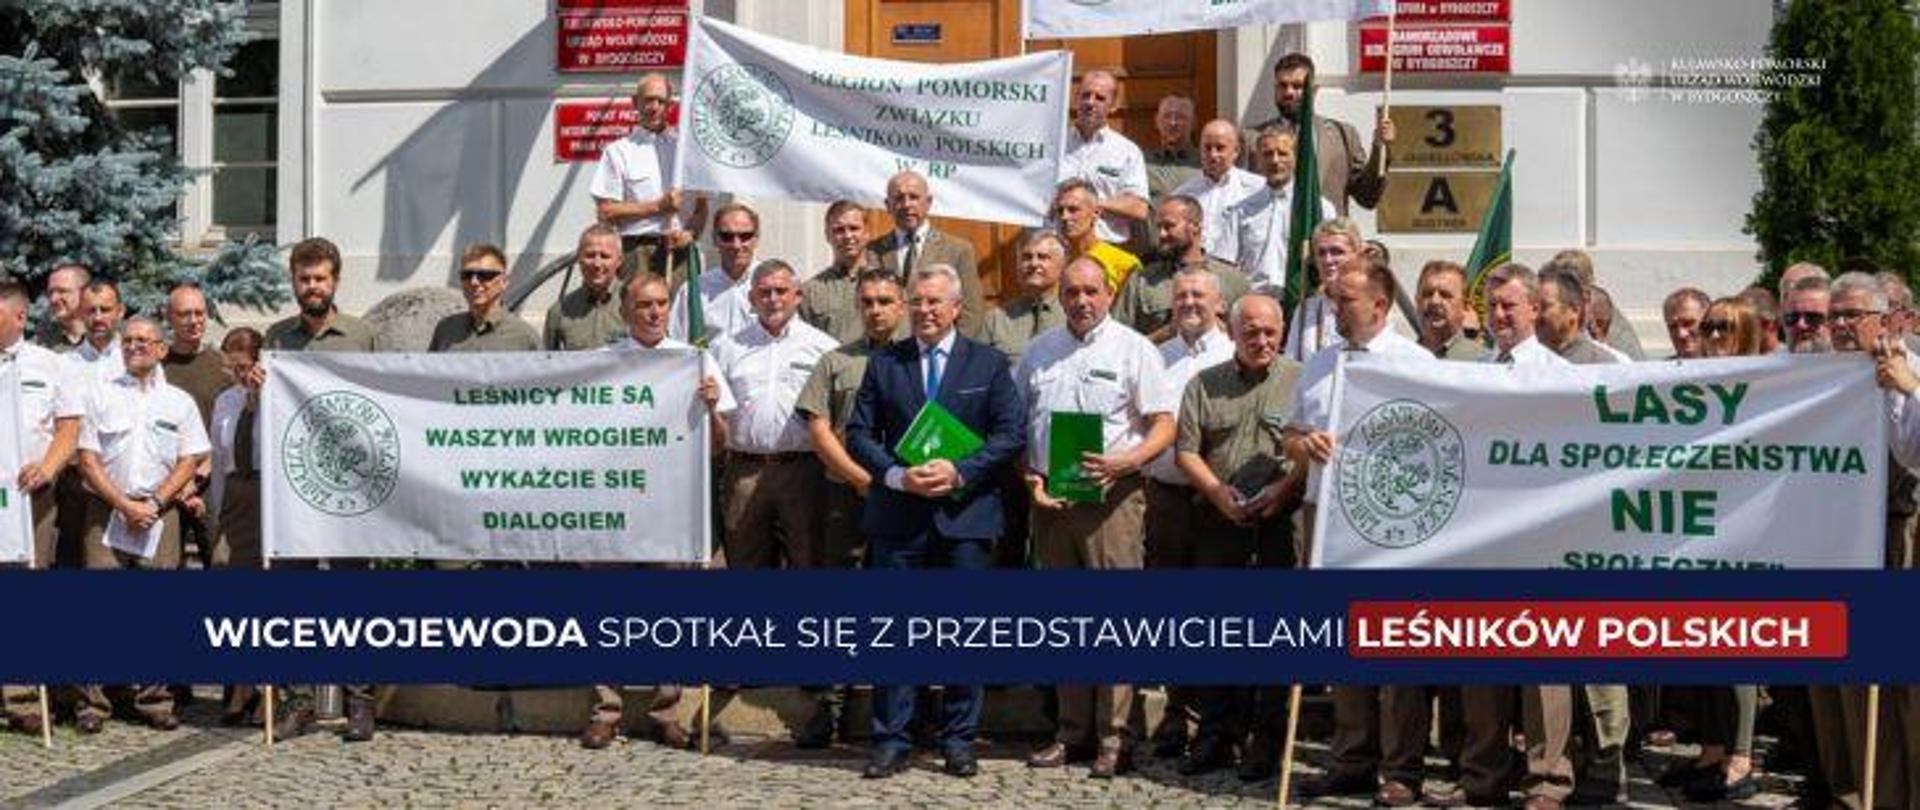 Wicewojewoda spotkał się z przedstawicielami Leśników Polskich przed Urzędem Wojewódzkim w Bydgoszczy
